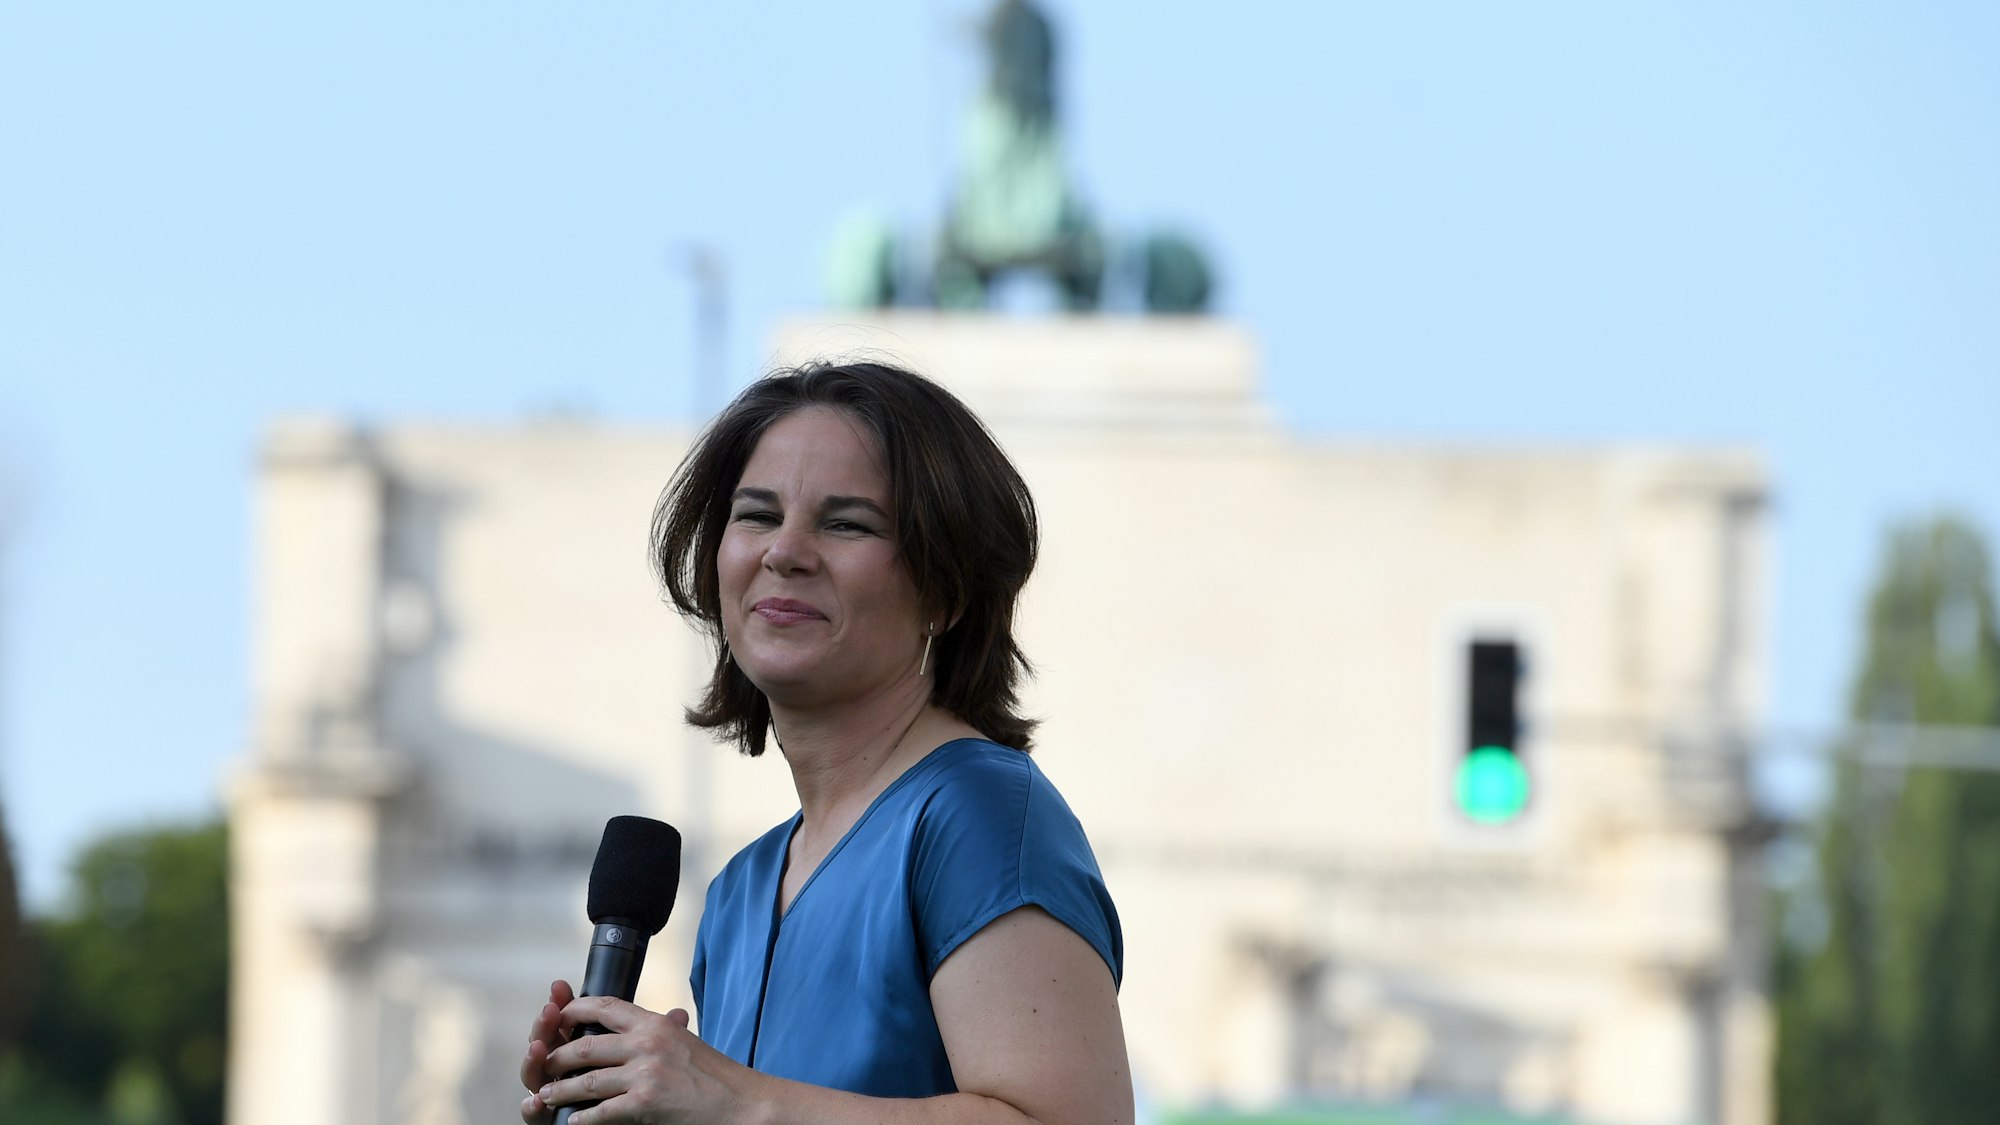 Annalena Baerbock, Kanzlerkandidatin der Grünen, spricht bei einer Wahlkampfveranstaltung auf dem Geschwister-Scholl-Platz, im Hintergrund das Siegestor.